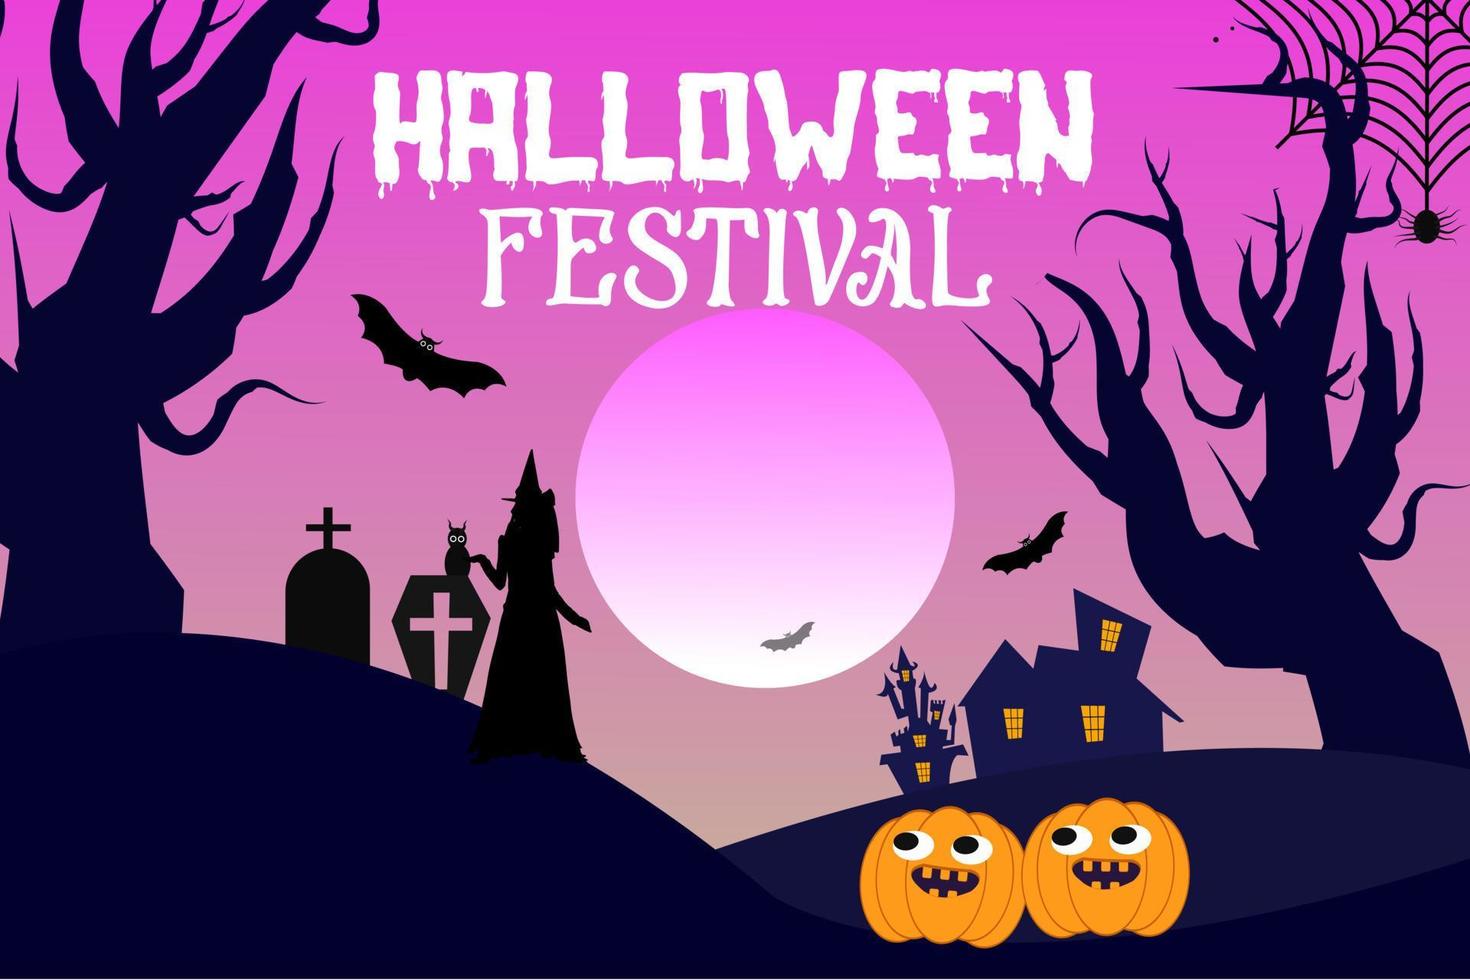 festival d'halloween fond de nuit terrifiant avec des chauves-souris noires, araignée, citrouille, scène de nuit d'horreur, nuit effrayante joyeux festival d'halloween fond horrible. vecteur